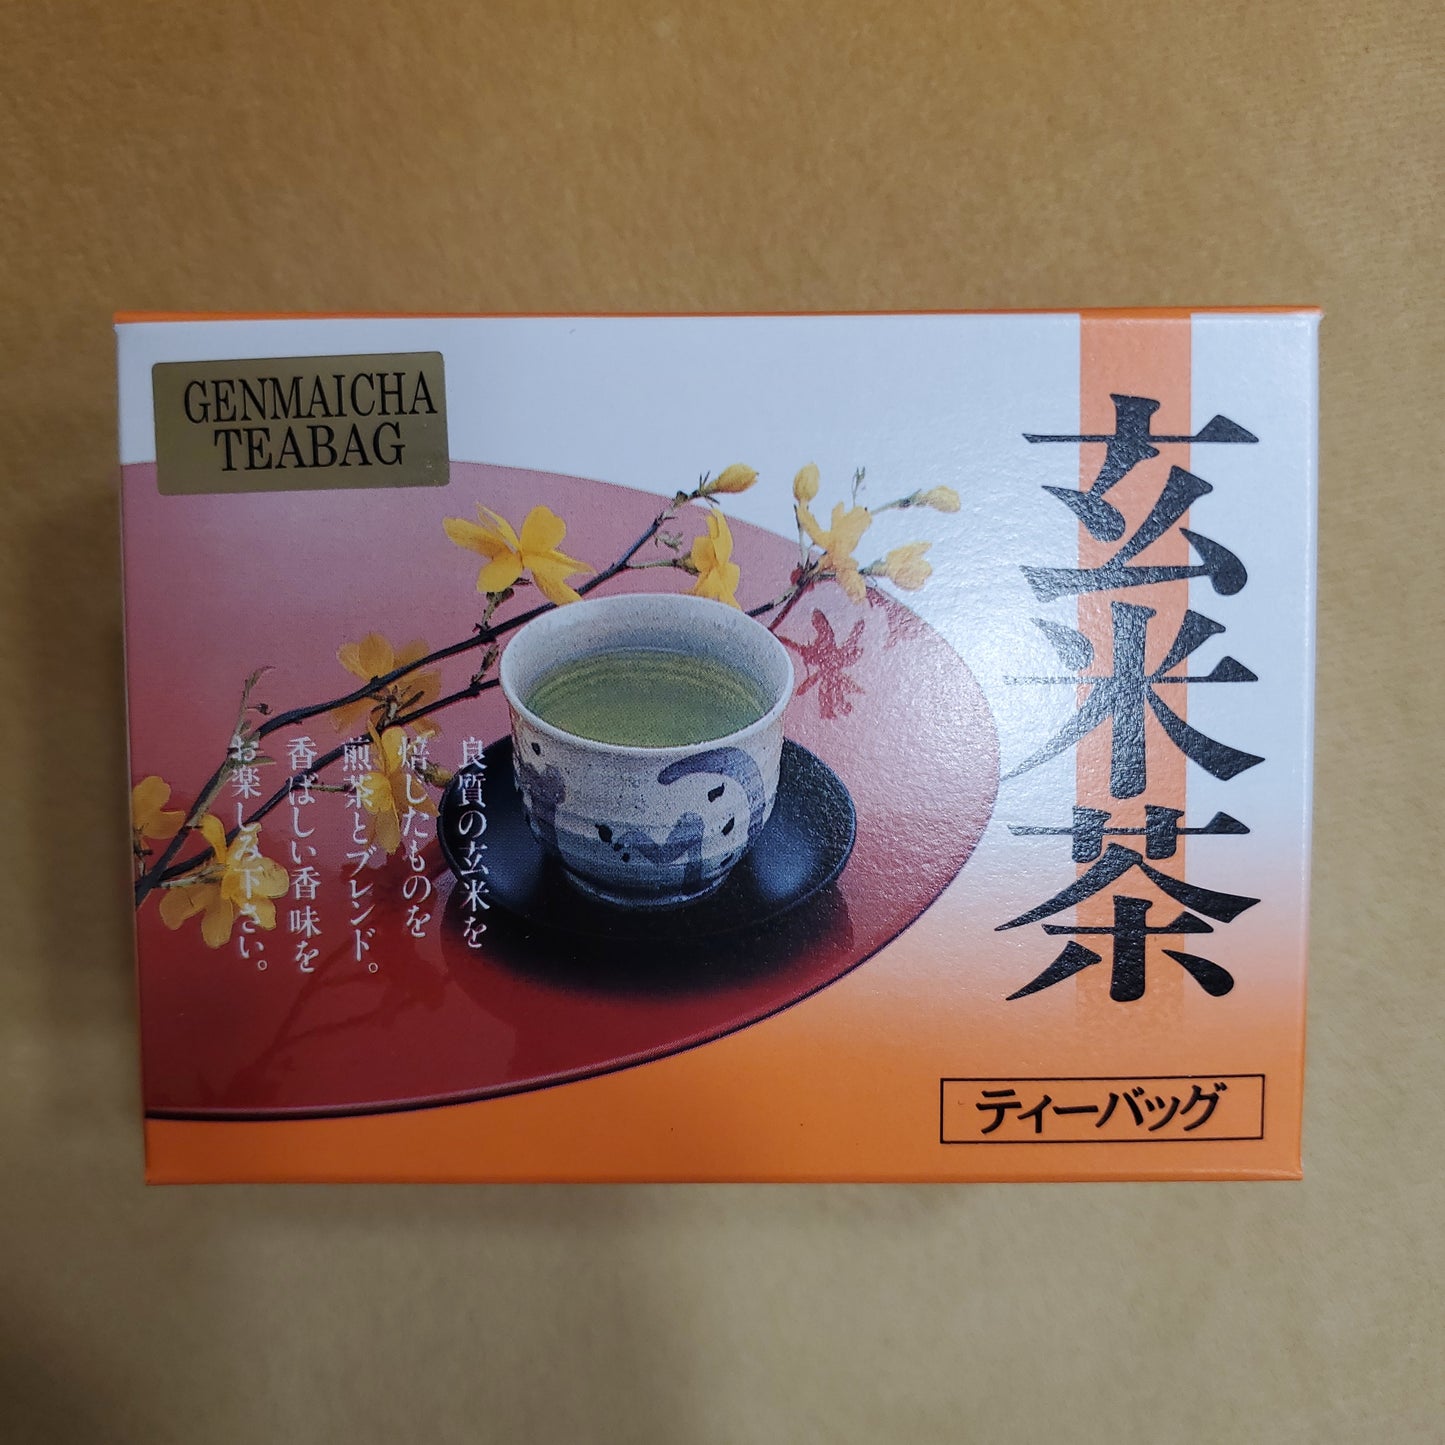 Otsuka Genmai Cha Tea Bag (15 Sachets) 大塚玄米茶茶包